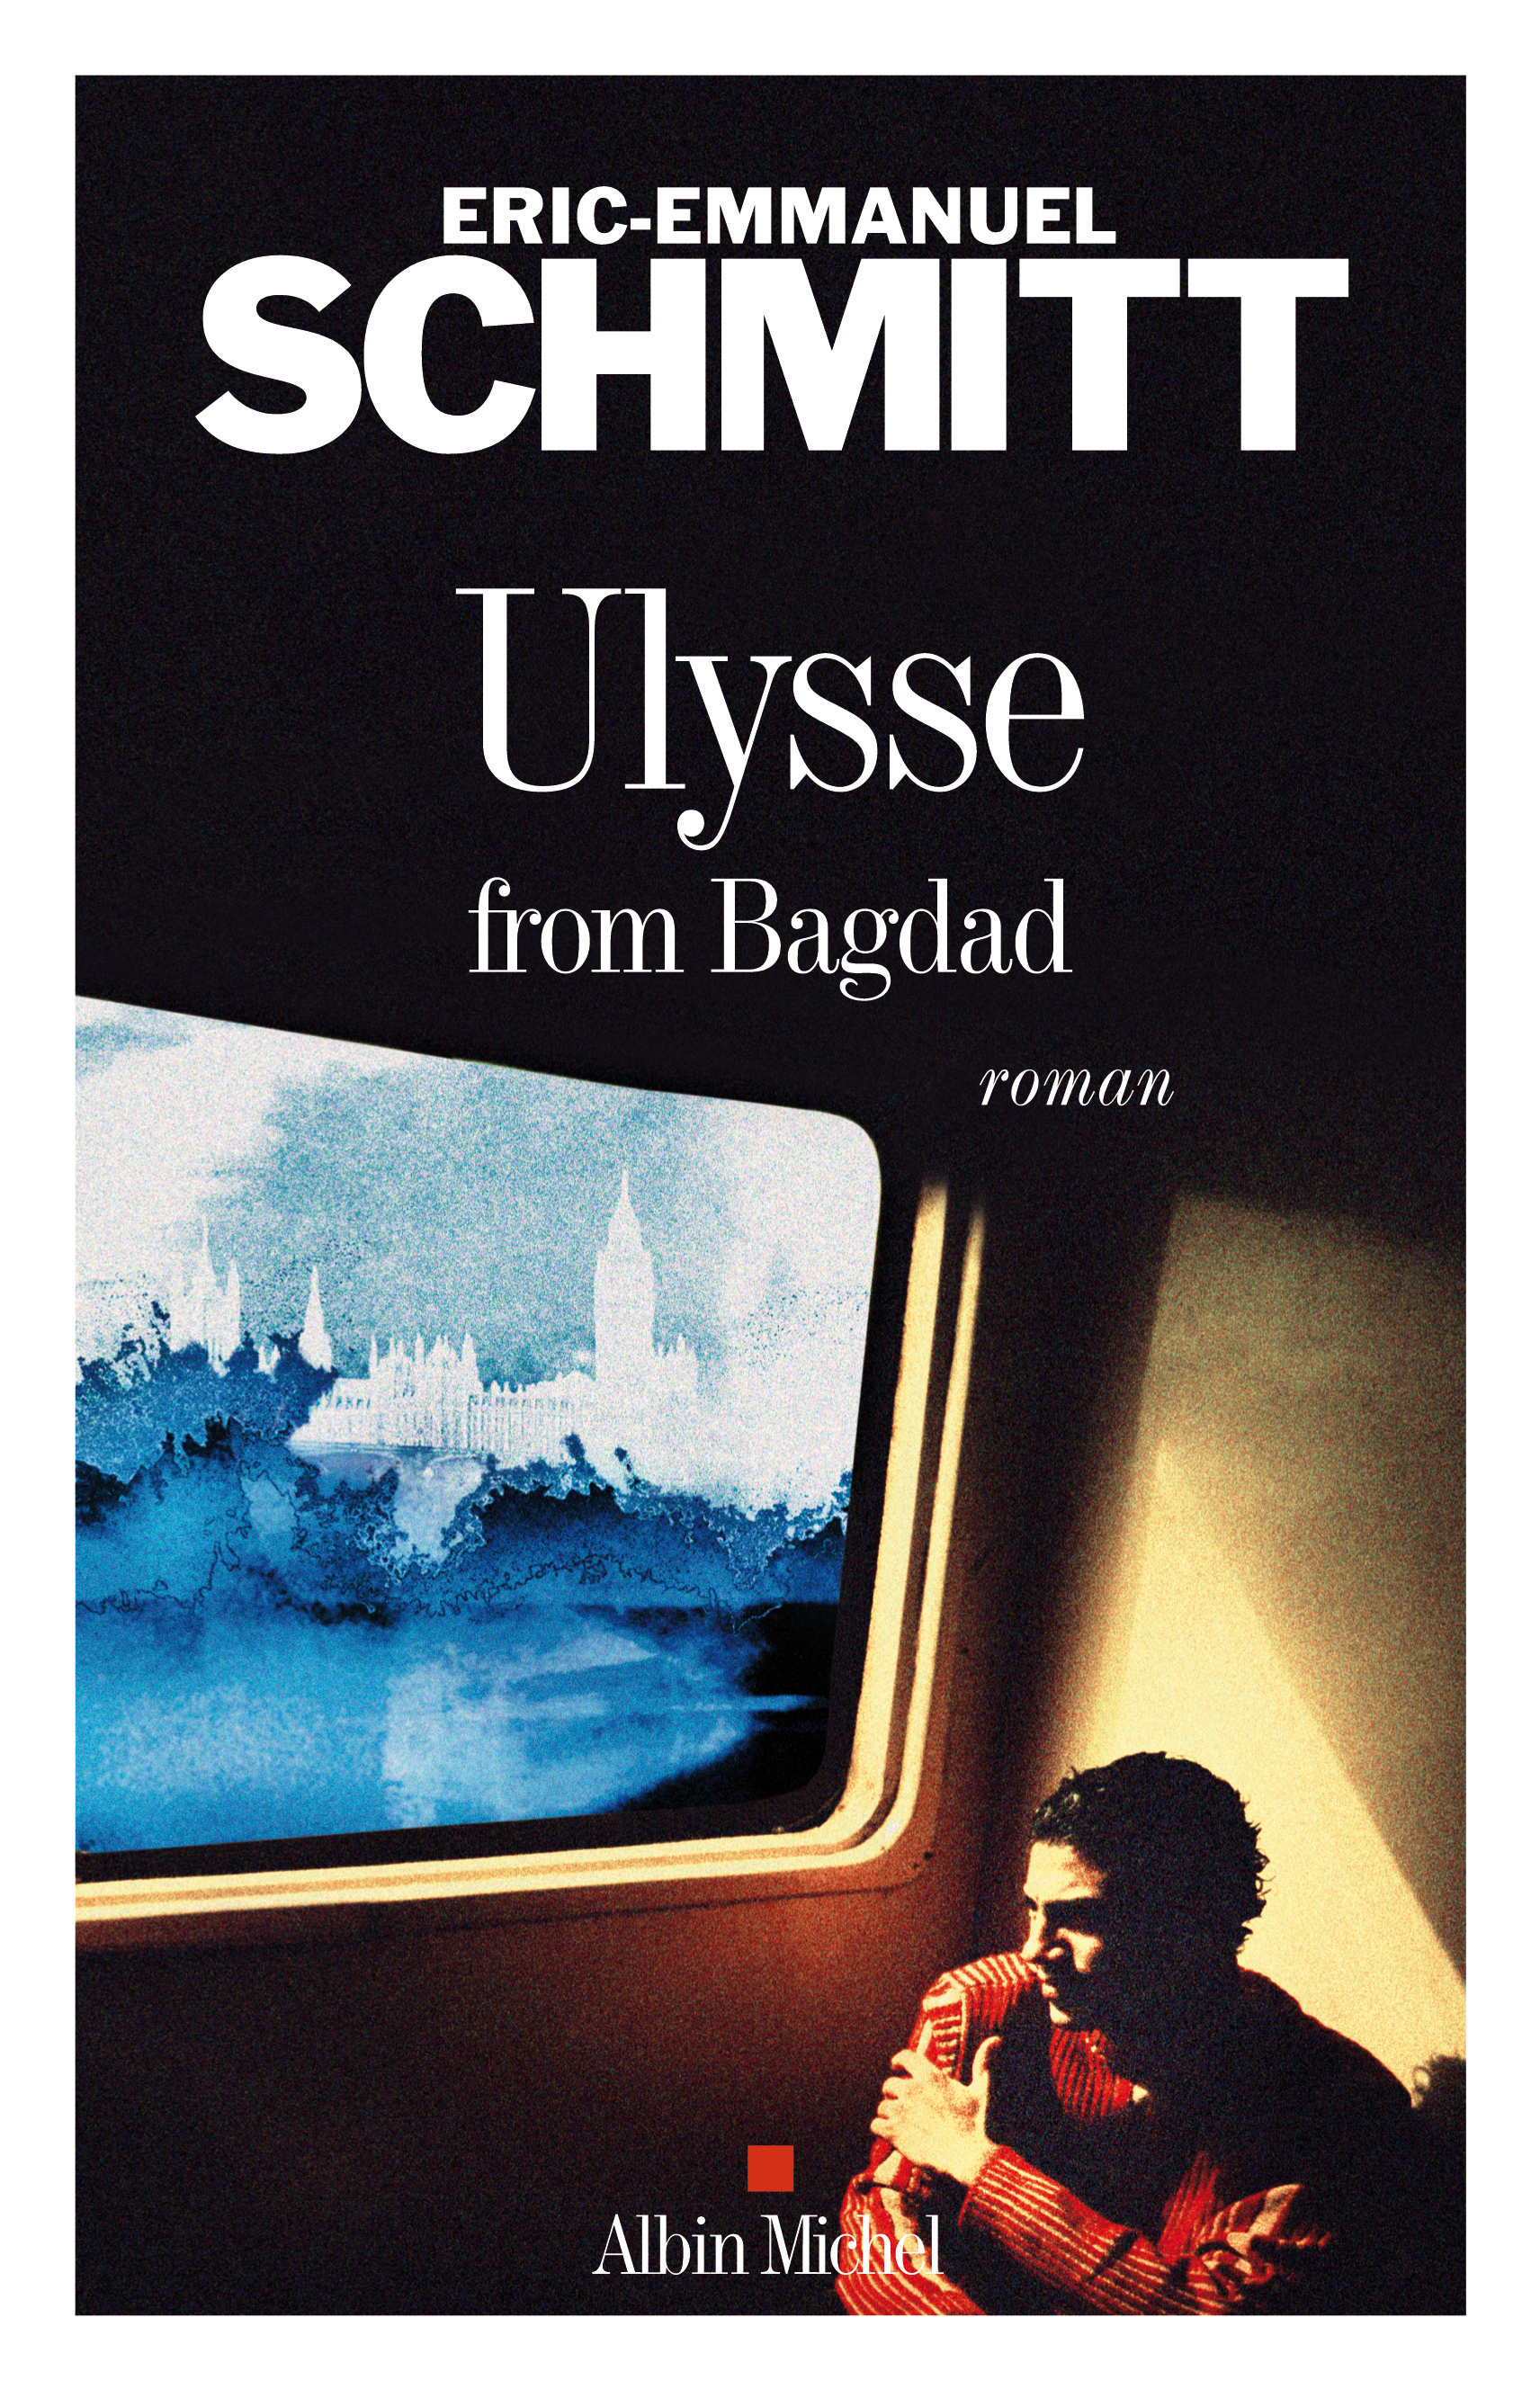 Couverture du livre Ulysse from Bagdad